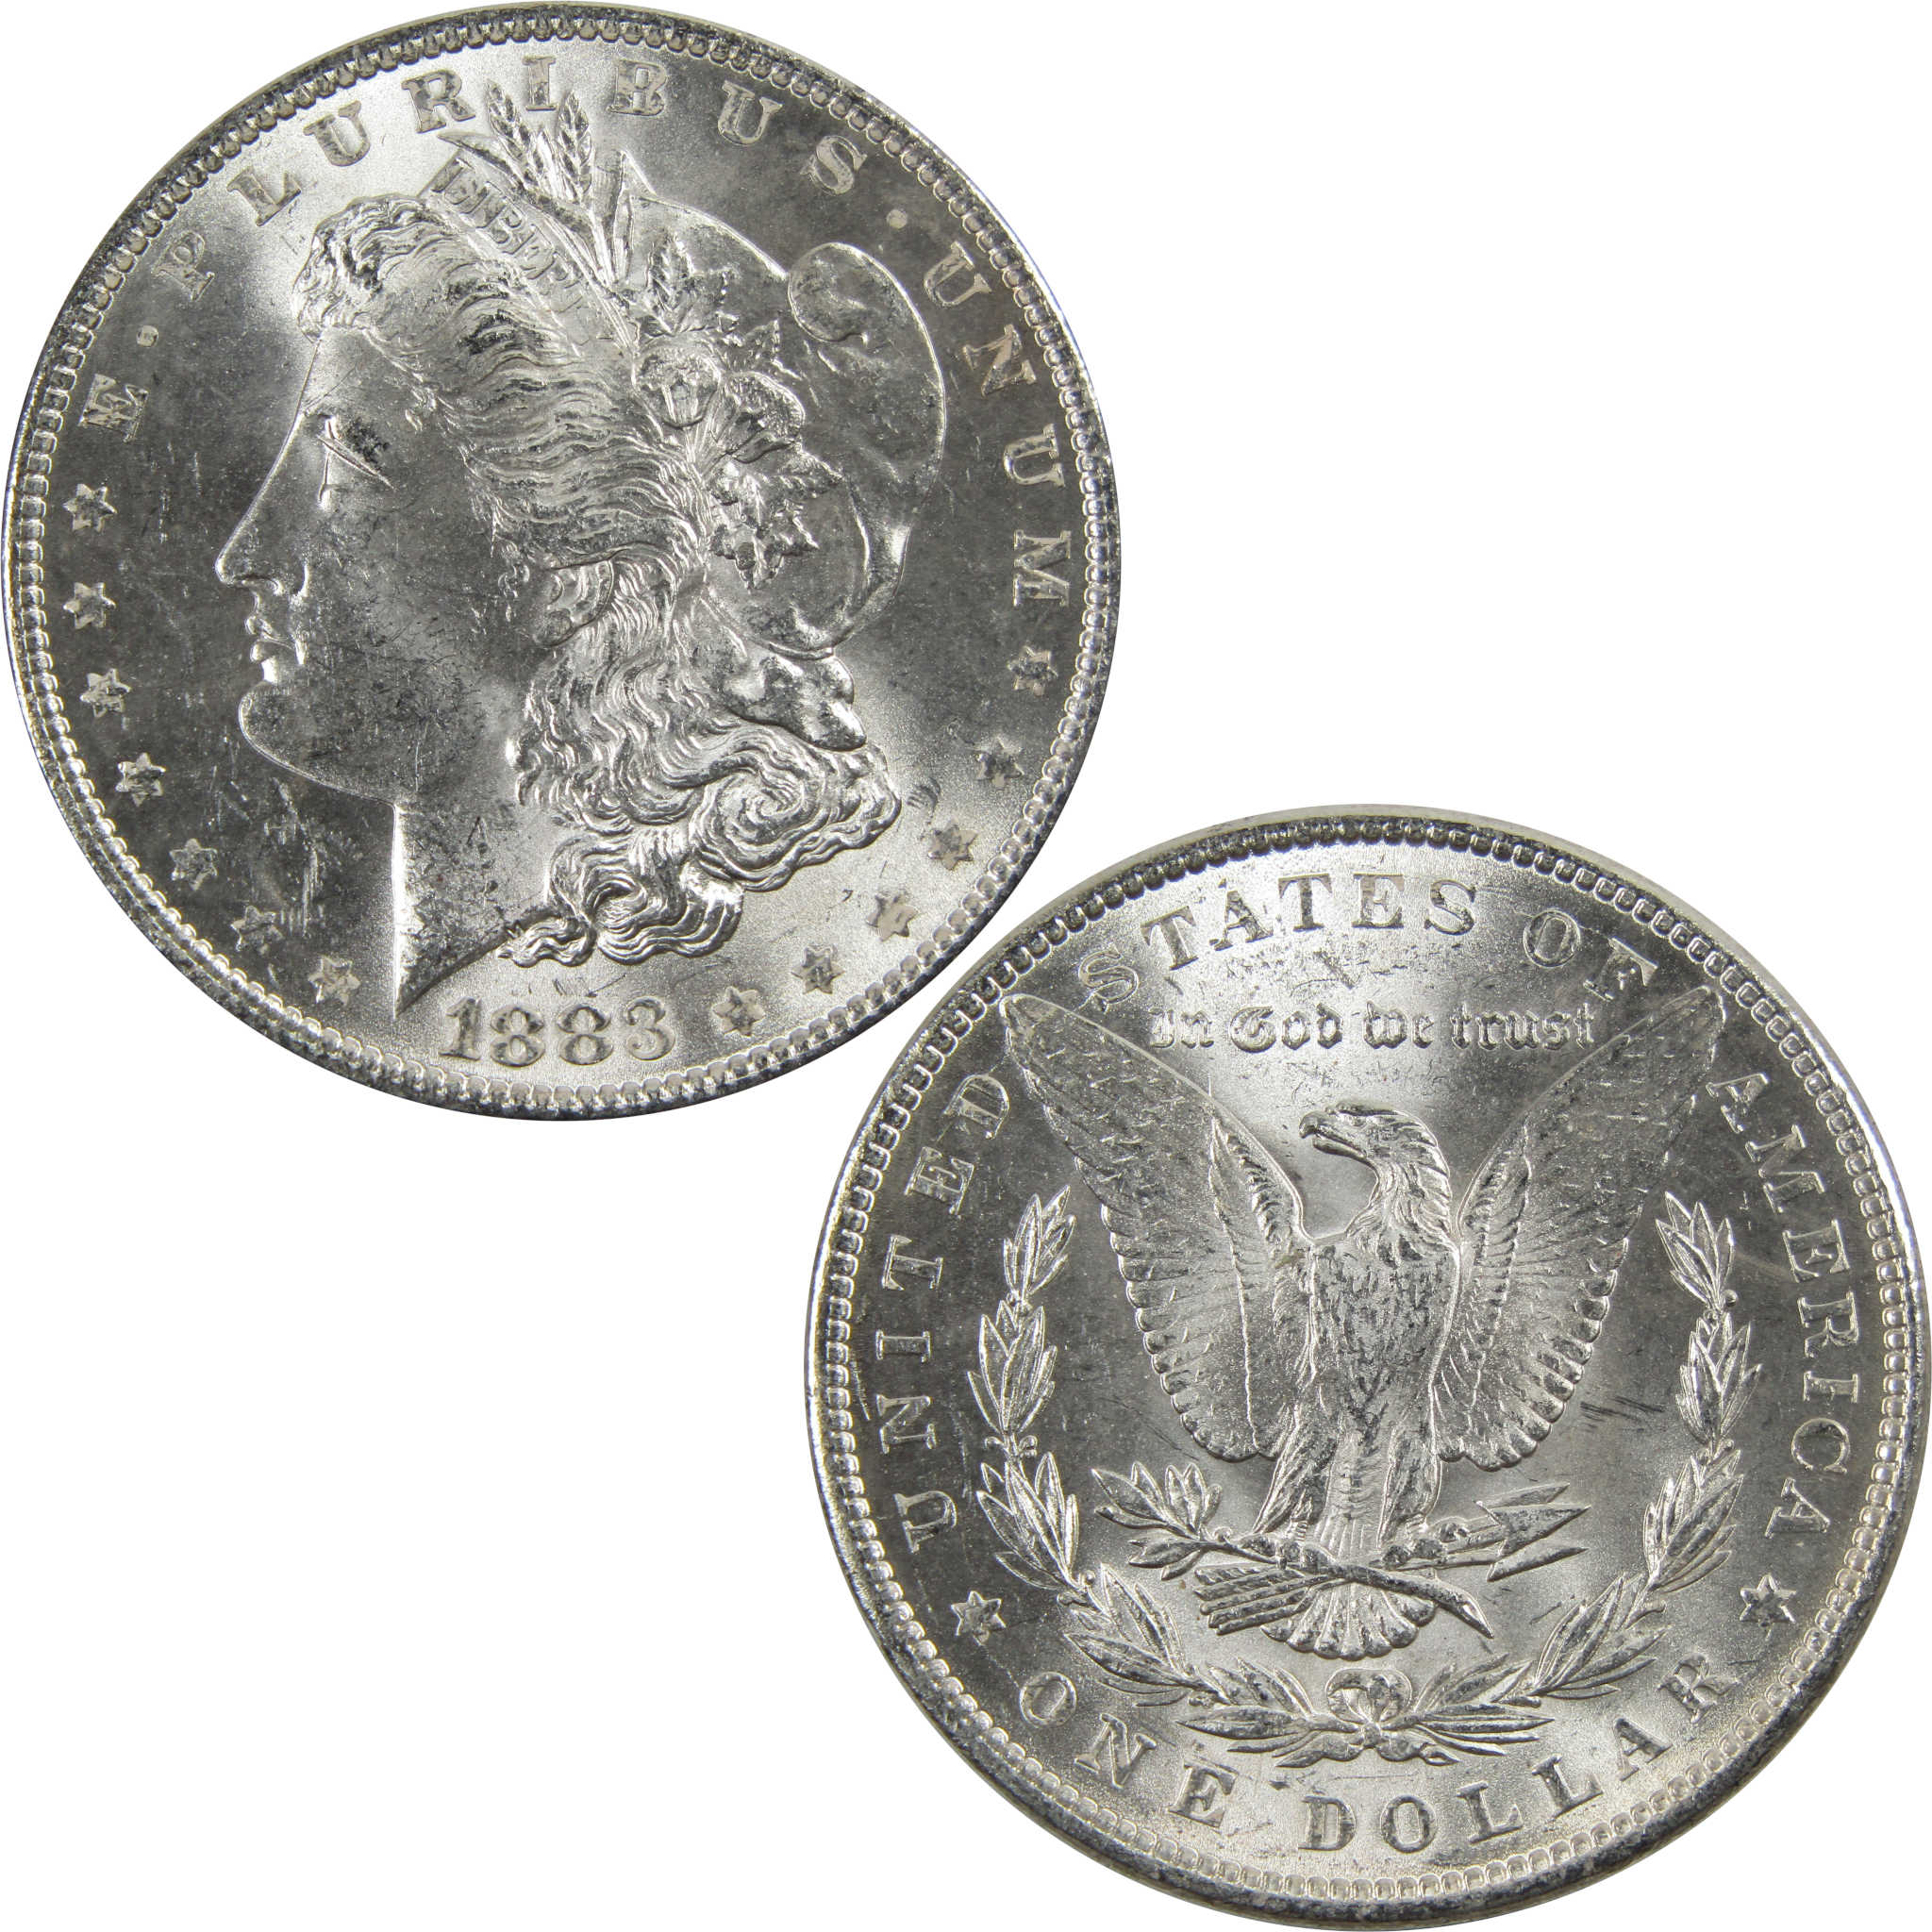 1883 Morgan Dollar BU Uncirculated 90% Silver $1 Coin SKU:I5168 - Morgan coin - Morgan silver dollar - Morgan silver dollar for sale - Profile Coins &amp; Collectibles